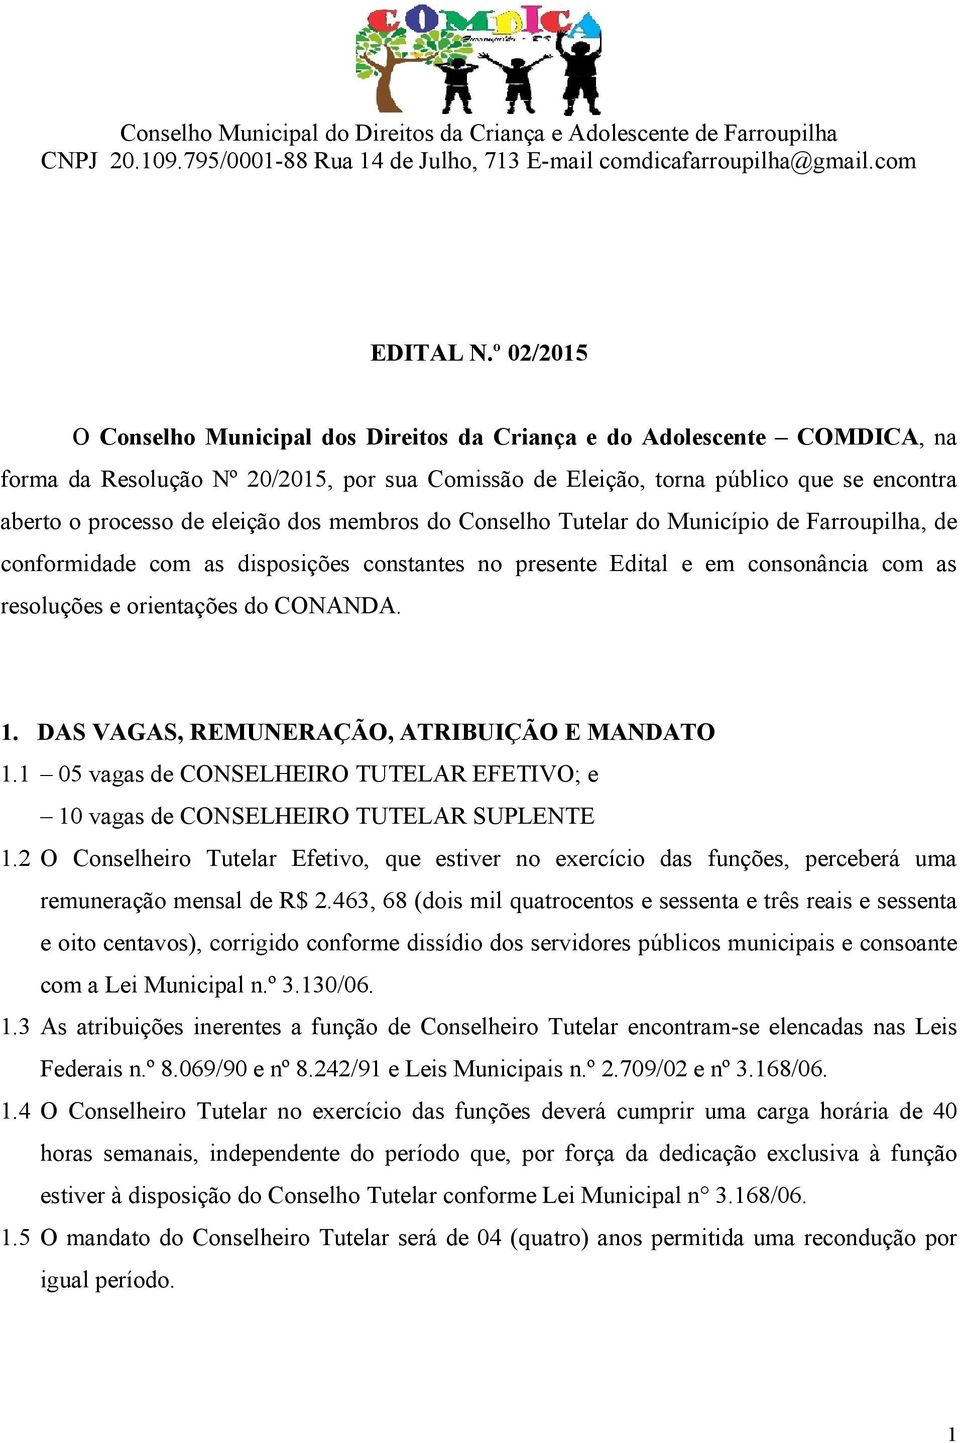 eleição dos membros do Conselho Tutelar do Município de Farroupilha, de conformidade com as disposições constantes no presente Edital e em consonância com as resoluções e orientações do CONANDA. 1.